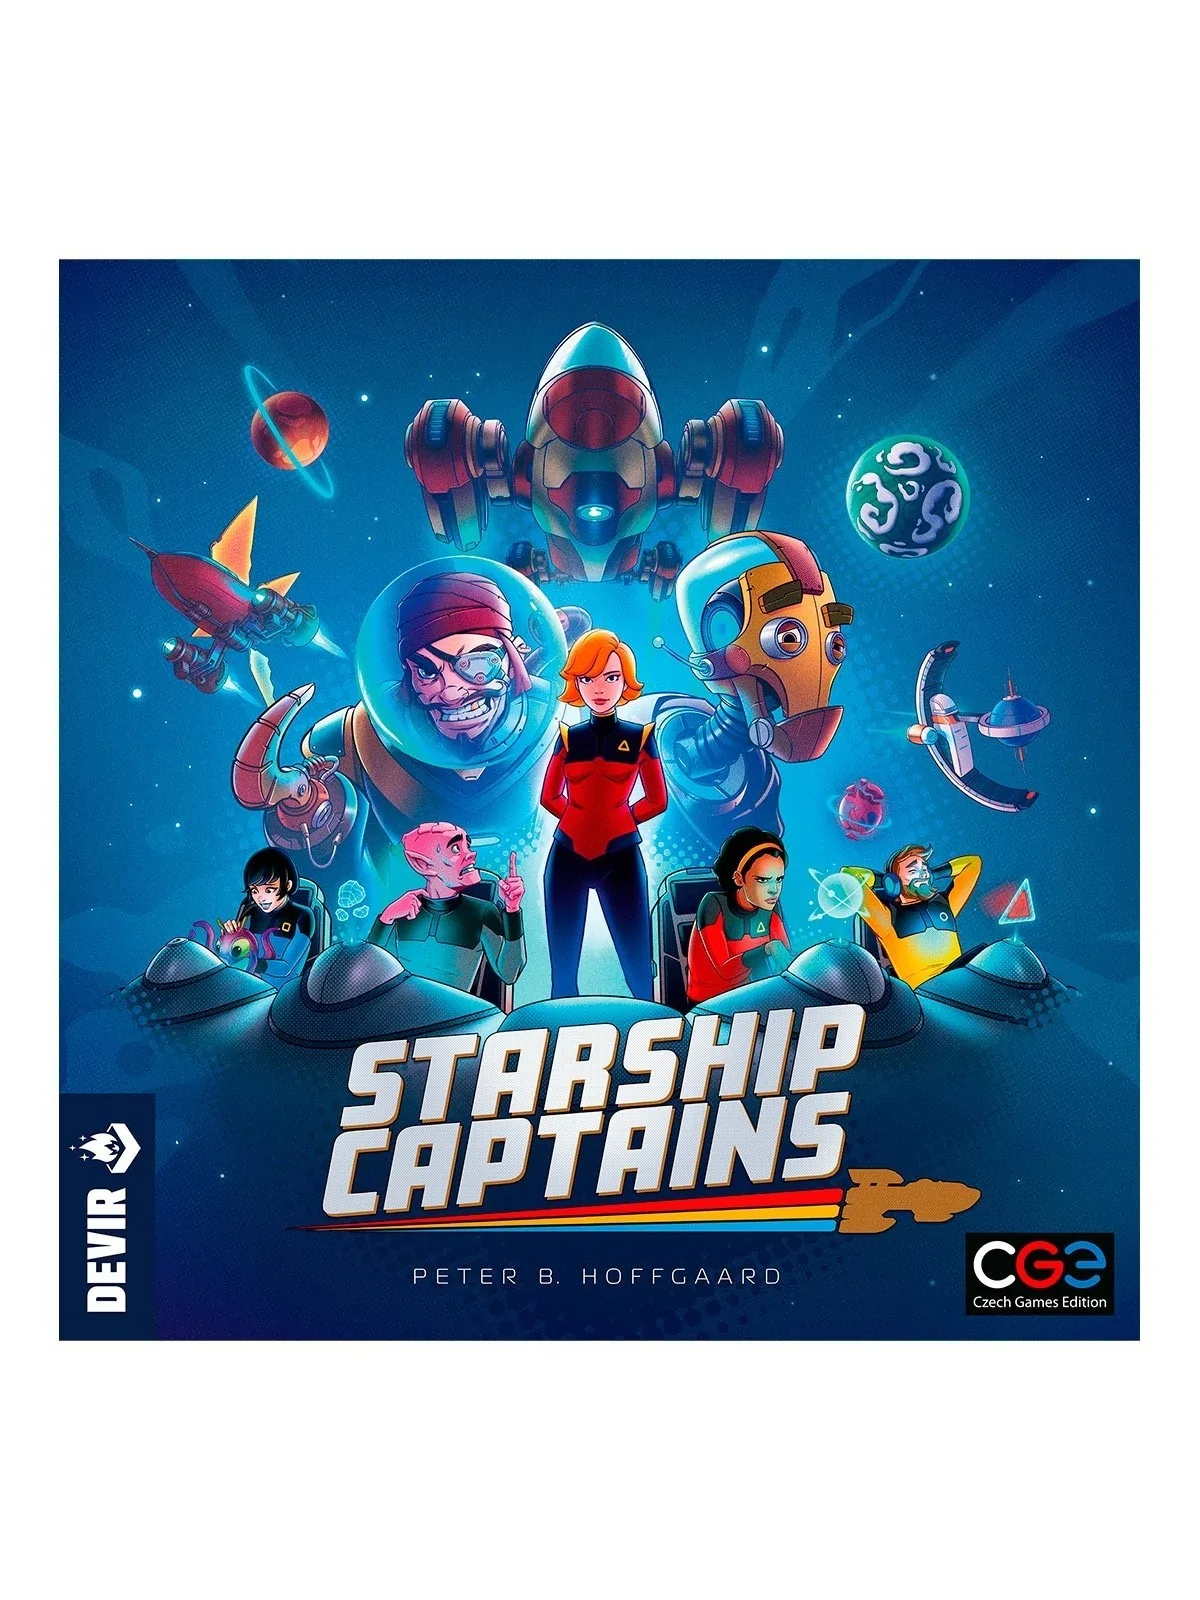 Comprar Starship Captains barato al mejor precio 53,99 € de Devir